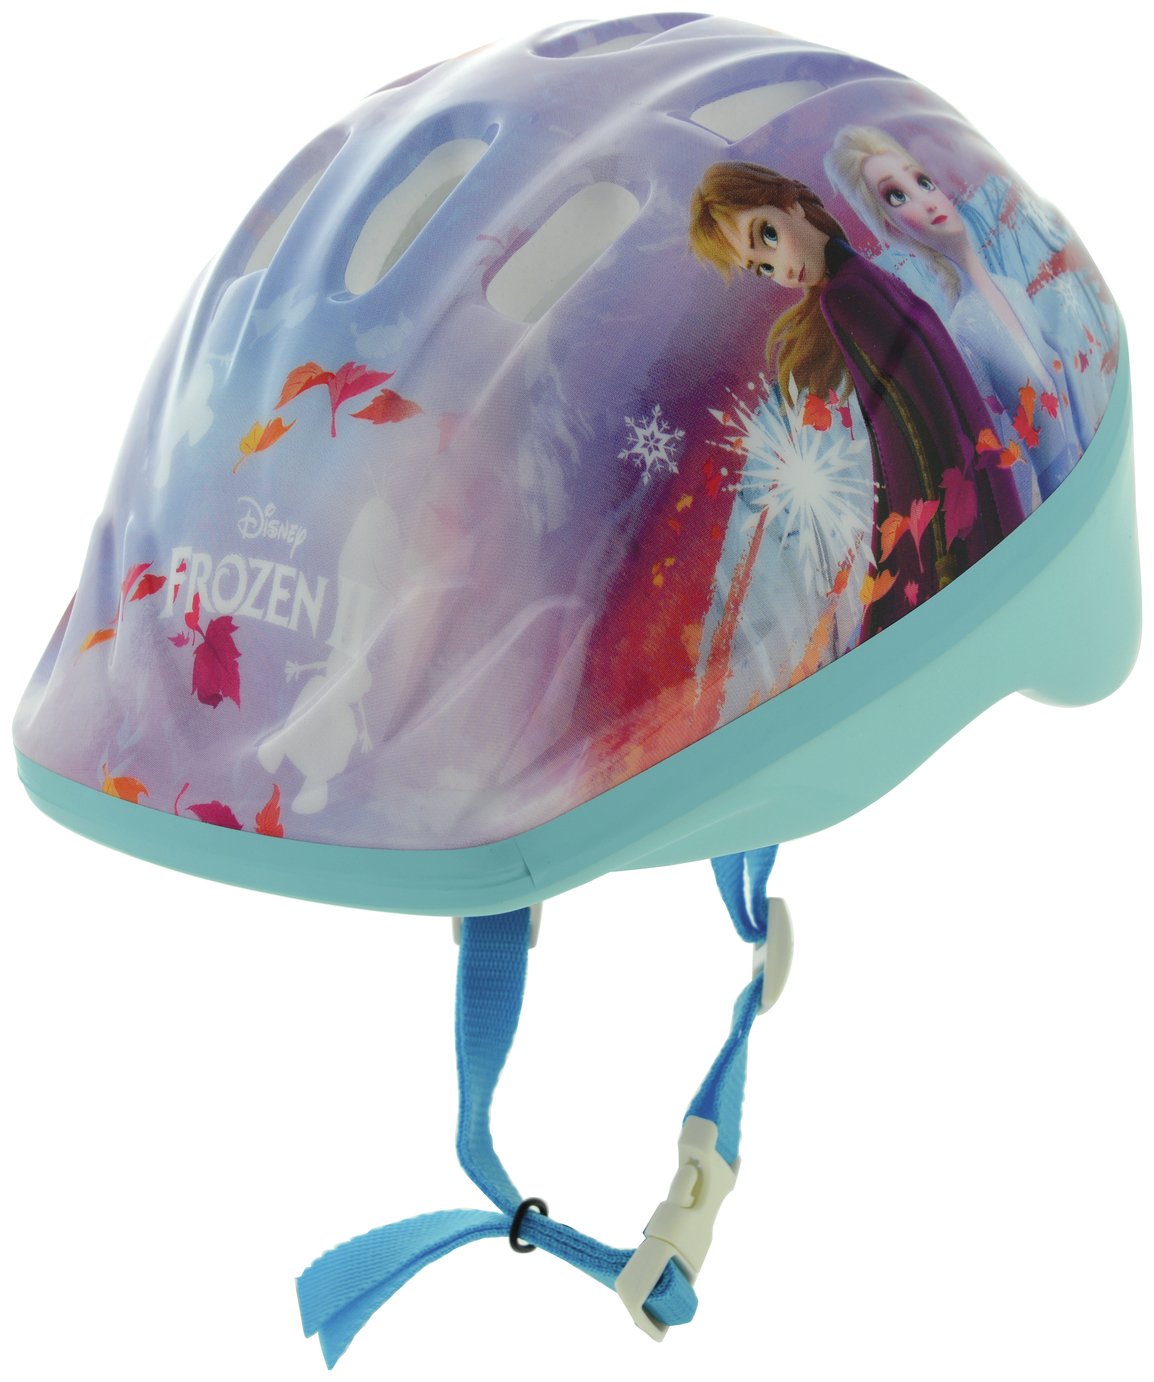 Frozen Kids Bike Helmet, 48-52cm             